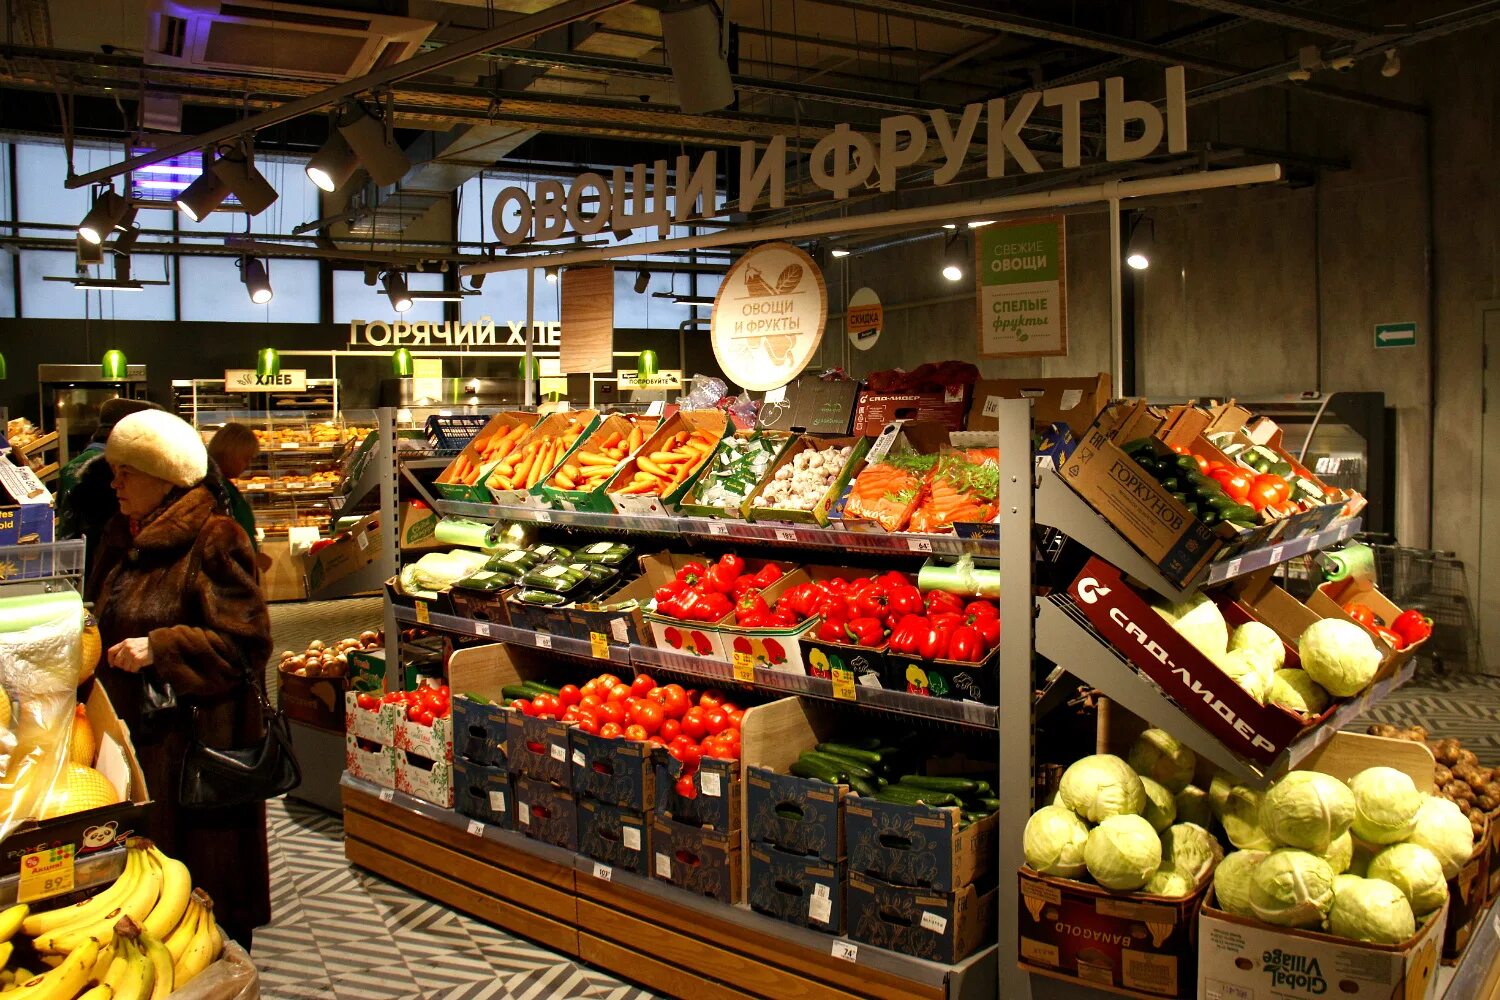 Сколько магазинов в новосибирске. Рынок и супермаркет. Супермаркет Новосибирск. Магазины Новосибирска. Новый супермаркет в Новосибирске.